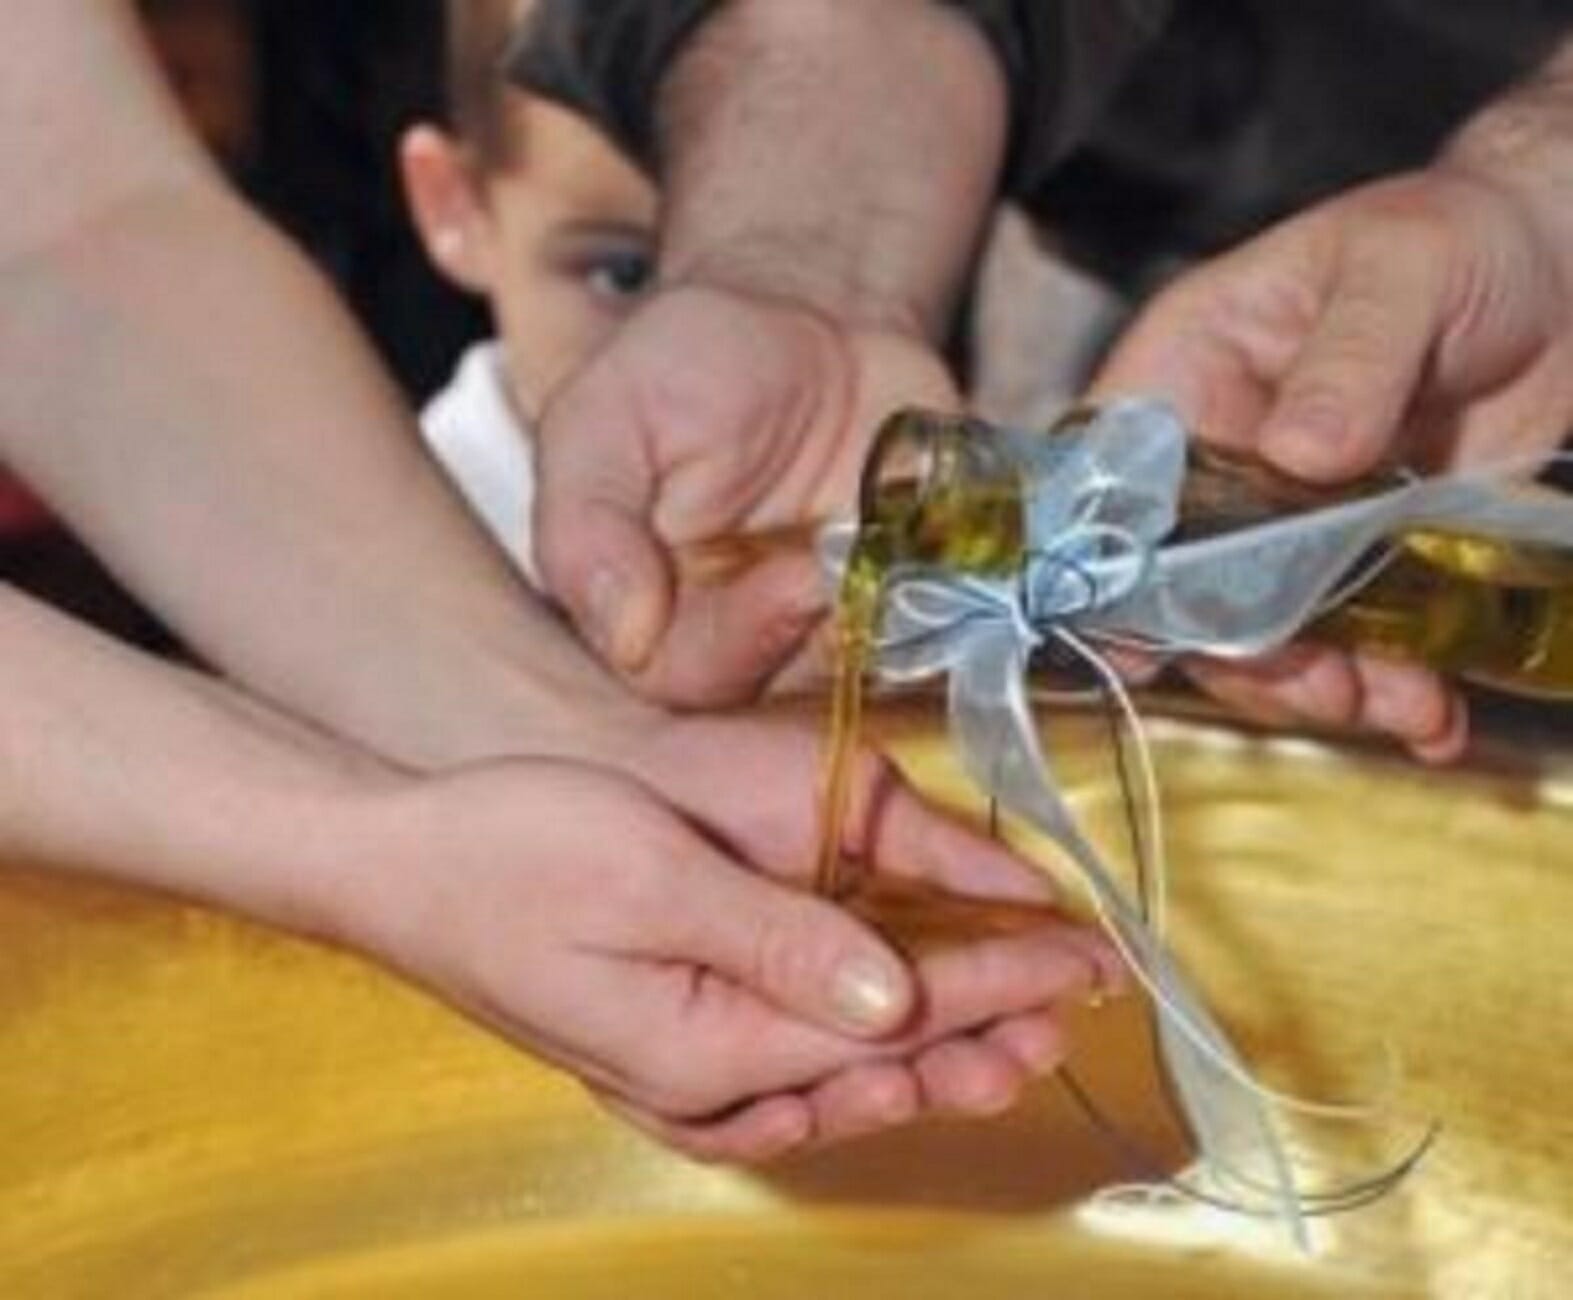 Θεσσαλονίκη: Έκλεψαν σε βάφτιση τον σταυρό από το λαιμό του μωρού